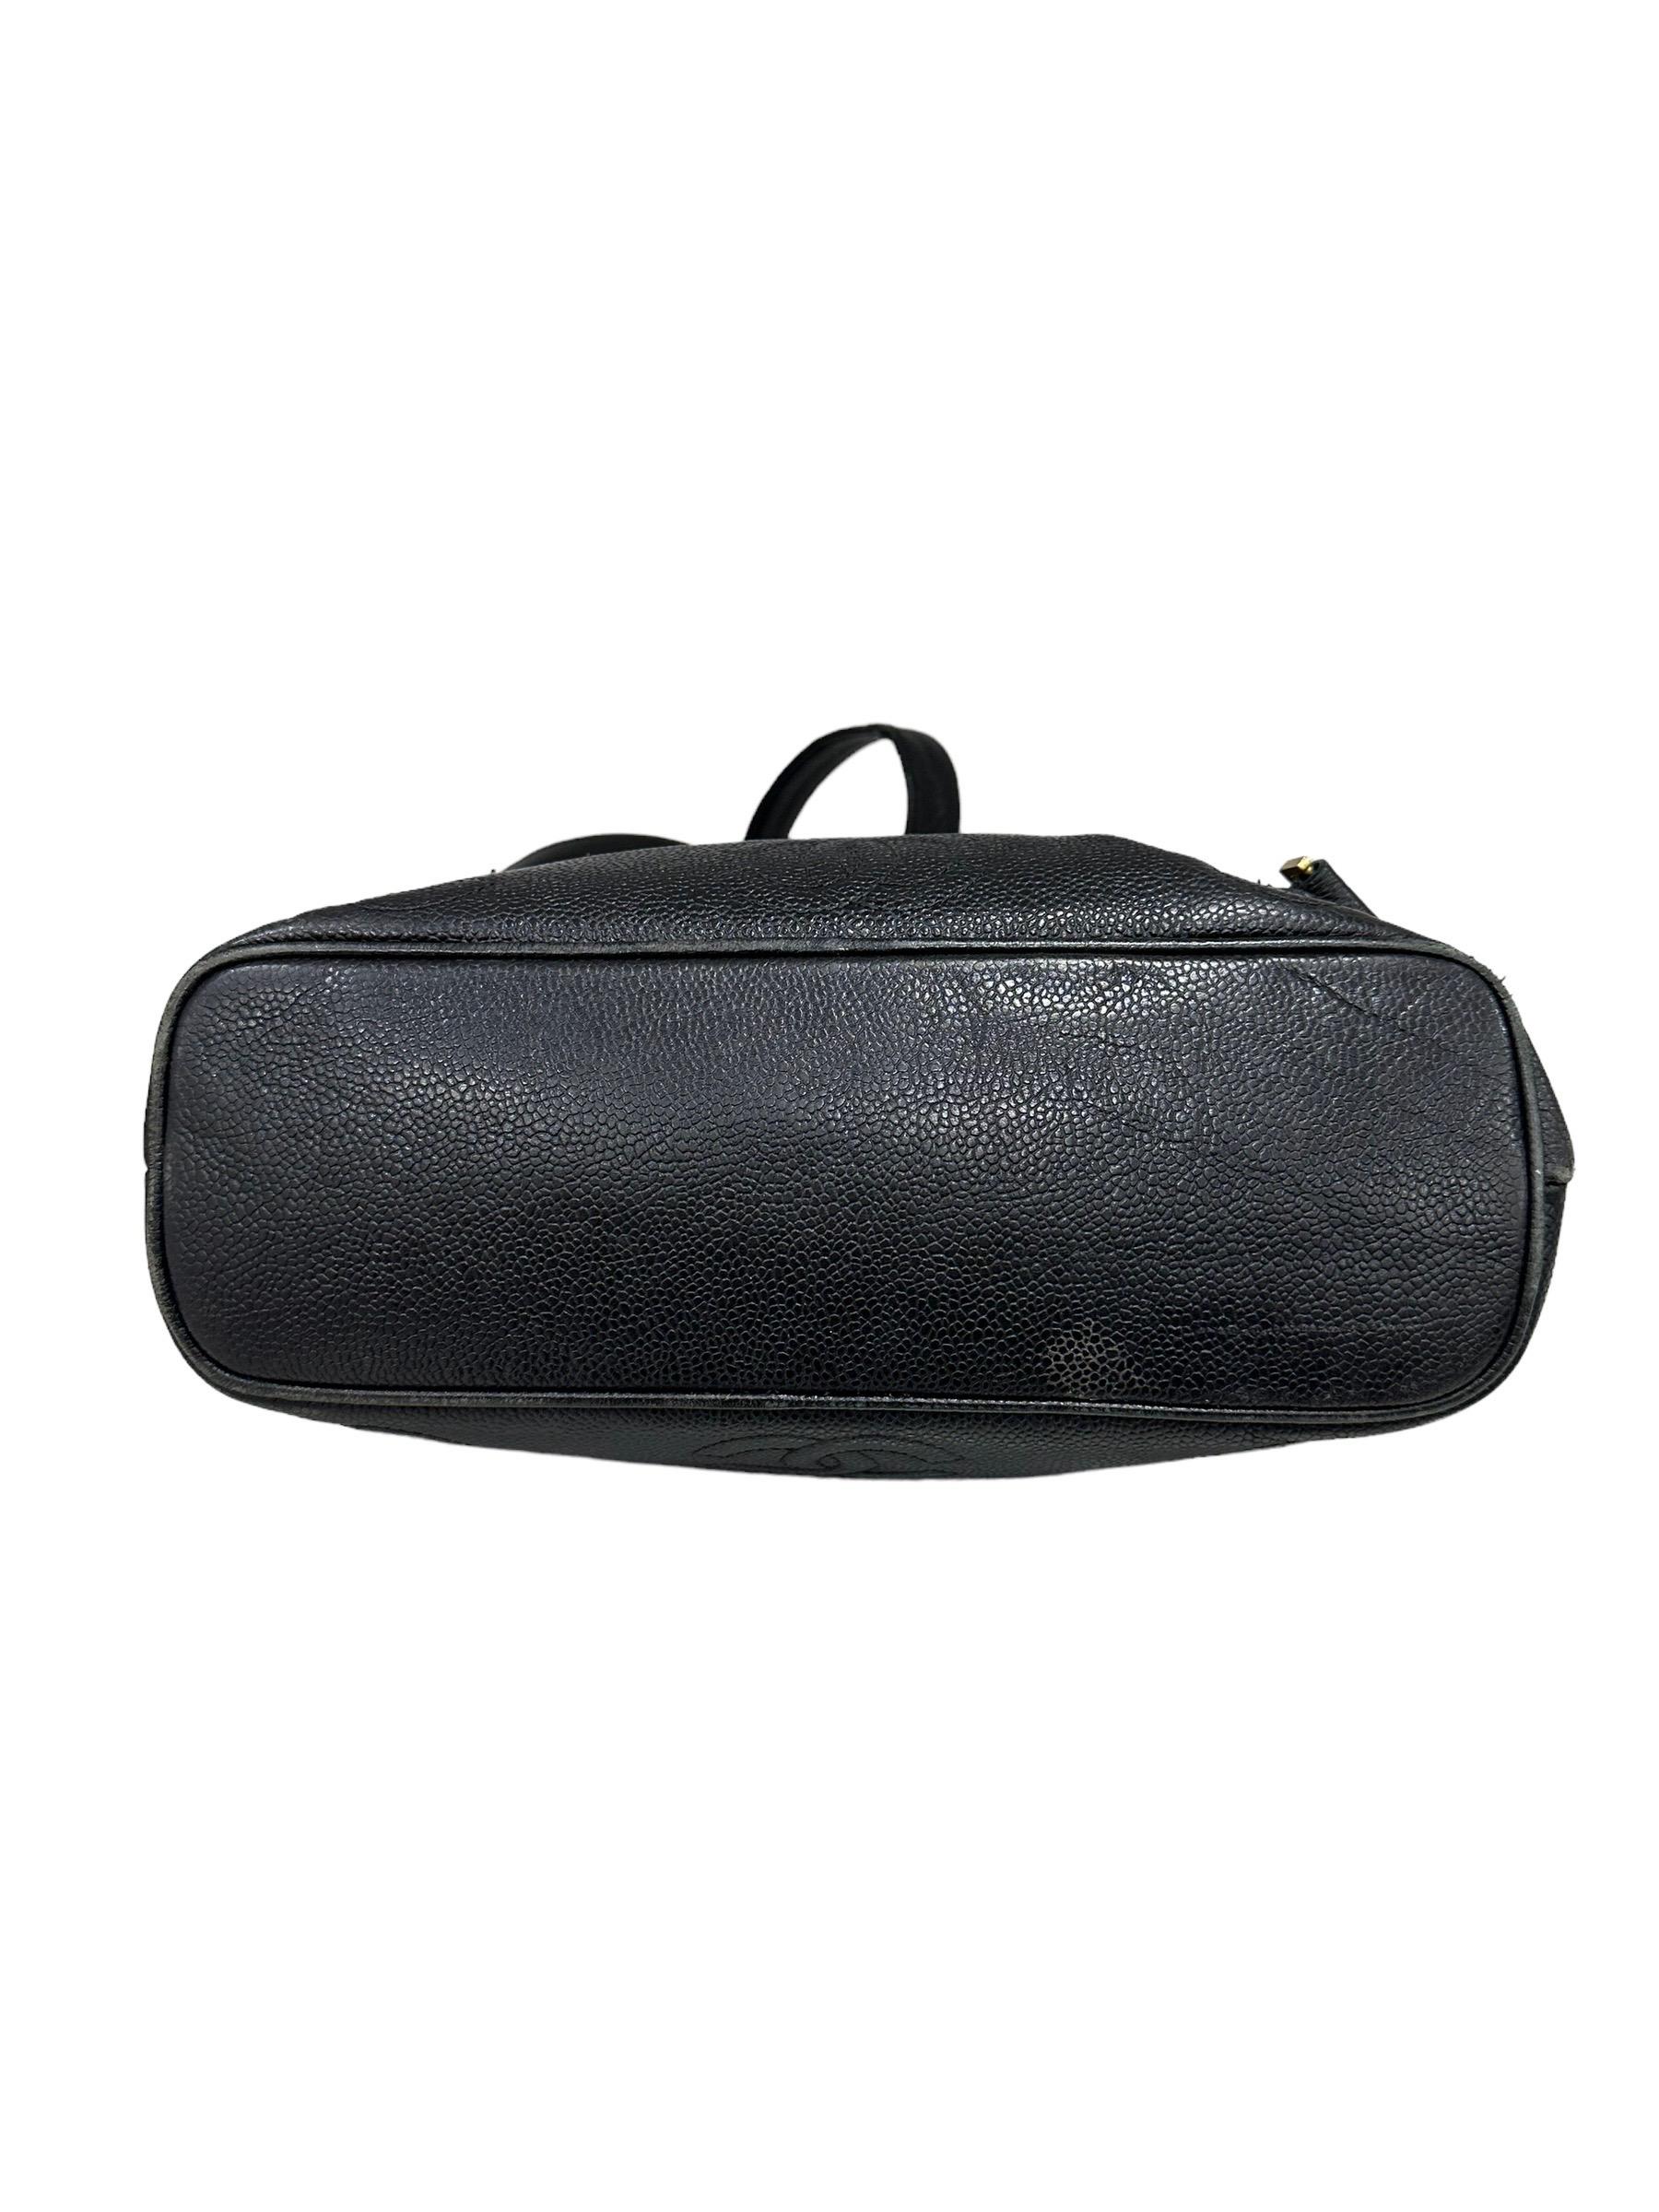 1997 Chanel Black Leather Vintage Backpack  7